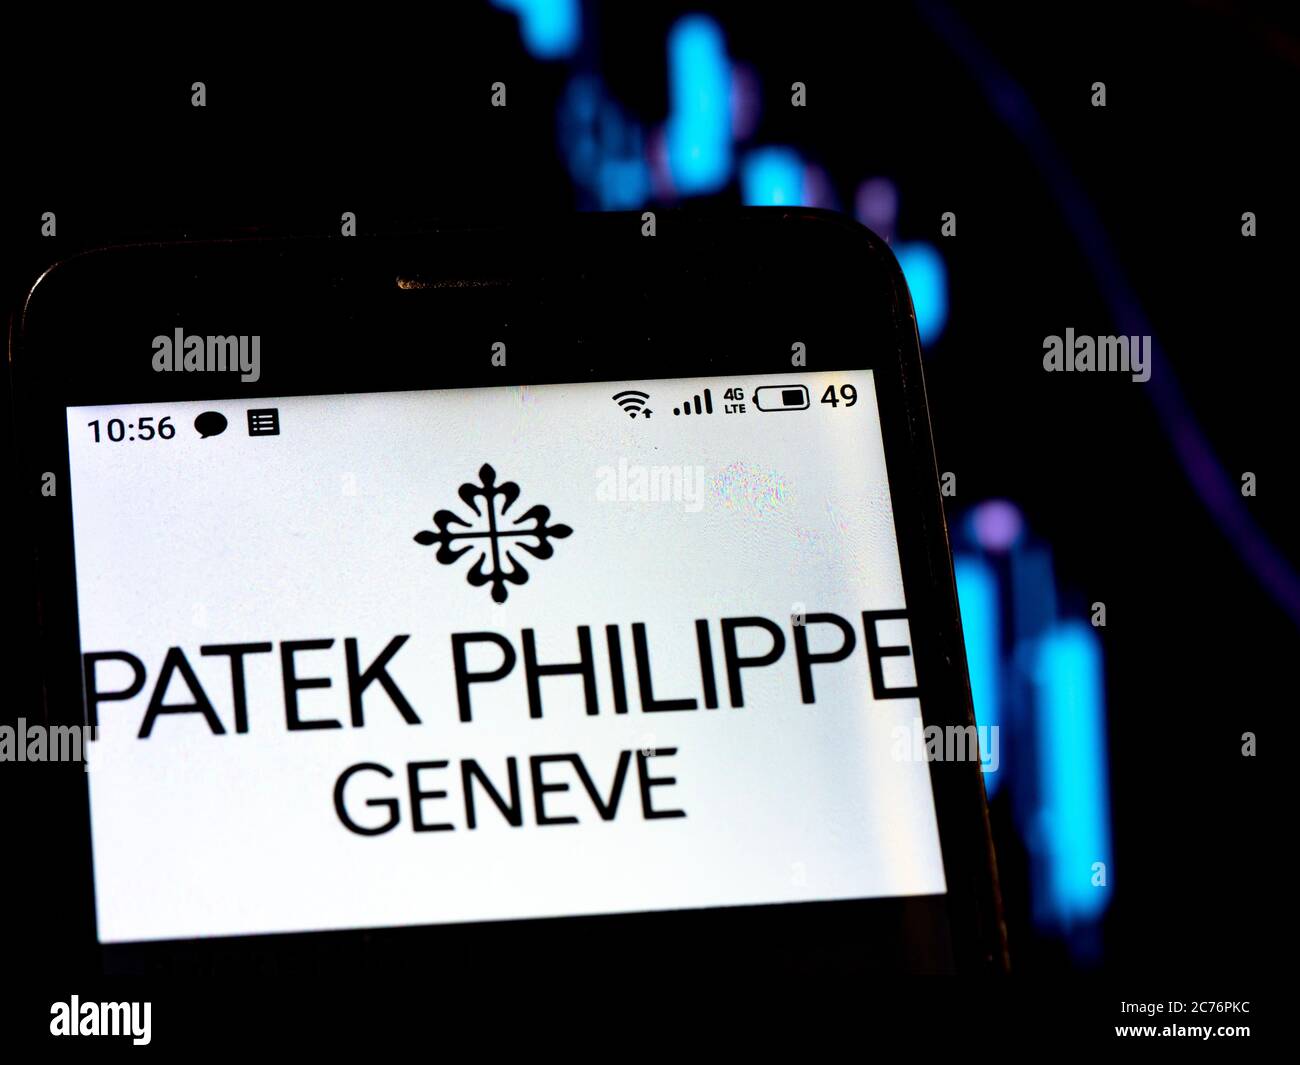 In dieser Fotolillustration Patek Philippe Logo auf einem Smartphone auf dem Hintergrund eines Graphen mit fallenden Kurven gesehen. Nach internationalen Medienberichten während der Coronavirus-Pandemie (COVID-19) stellte Patek Philippe die Produktion ein. Stockfoto